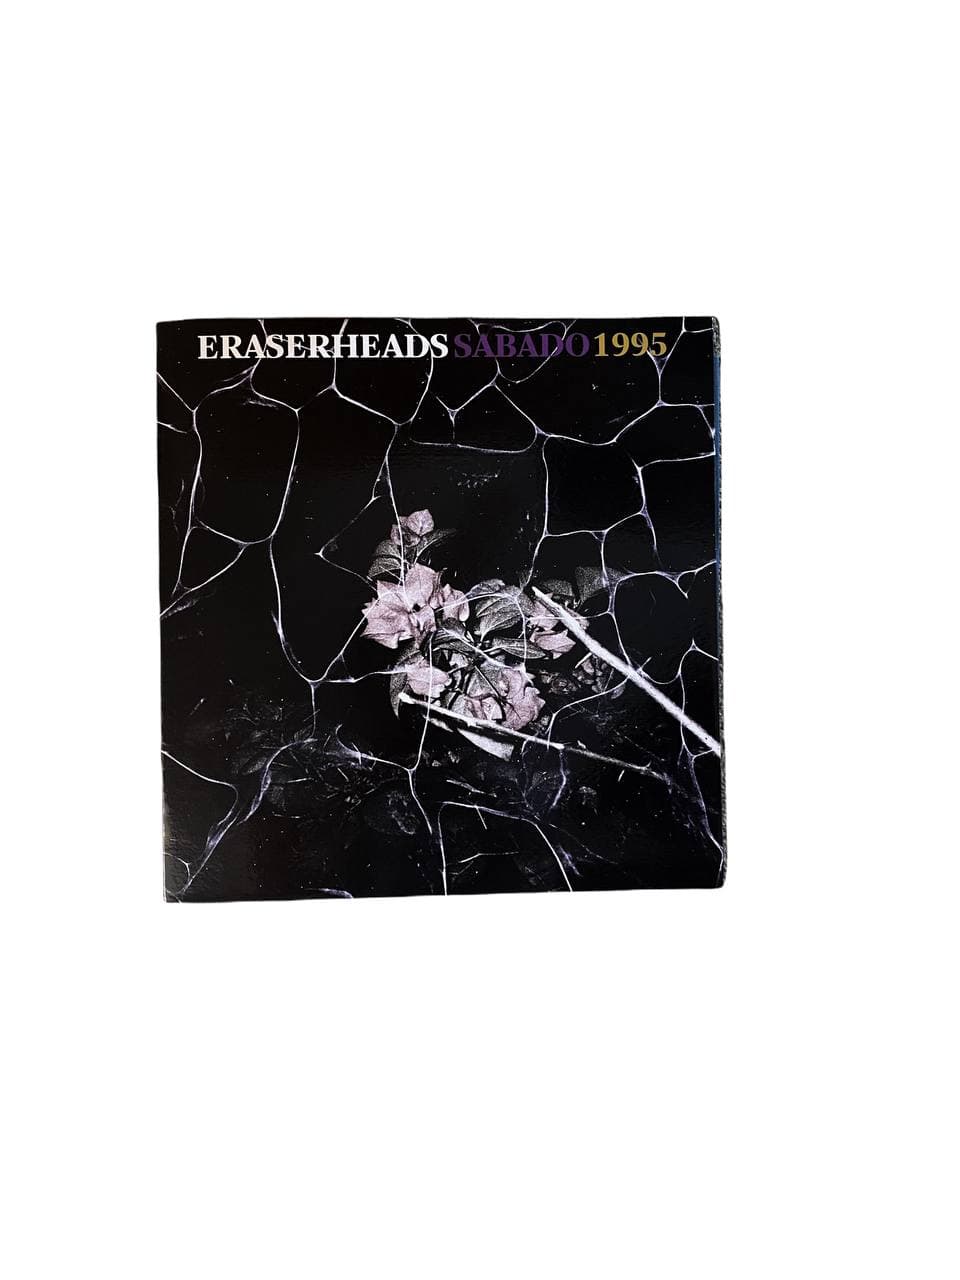 Eraserheads - Sabado/1995 LP (Offshore Music)